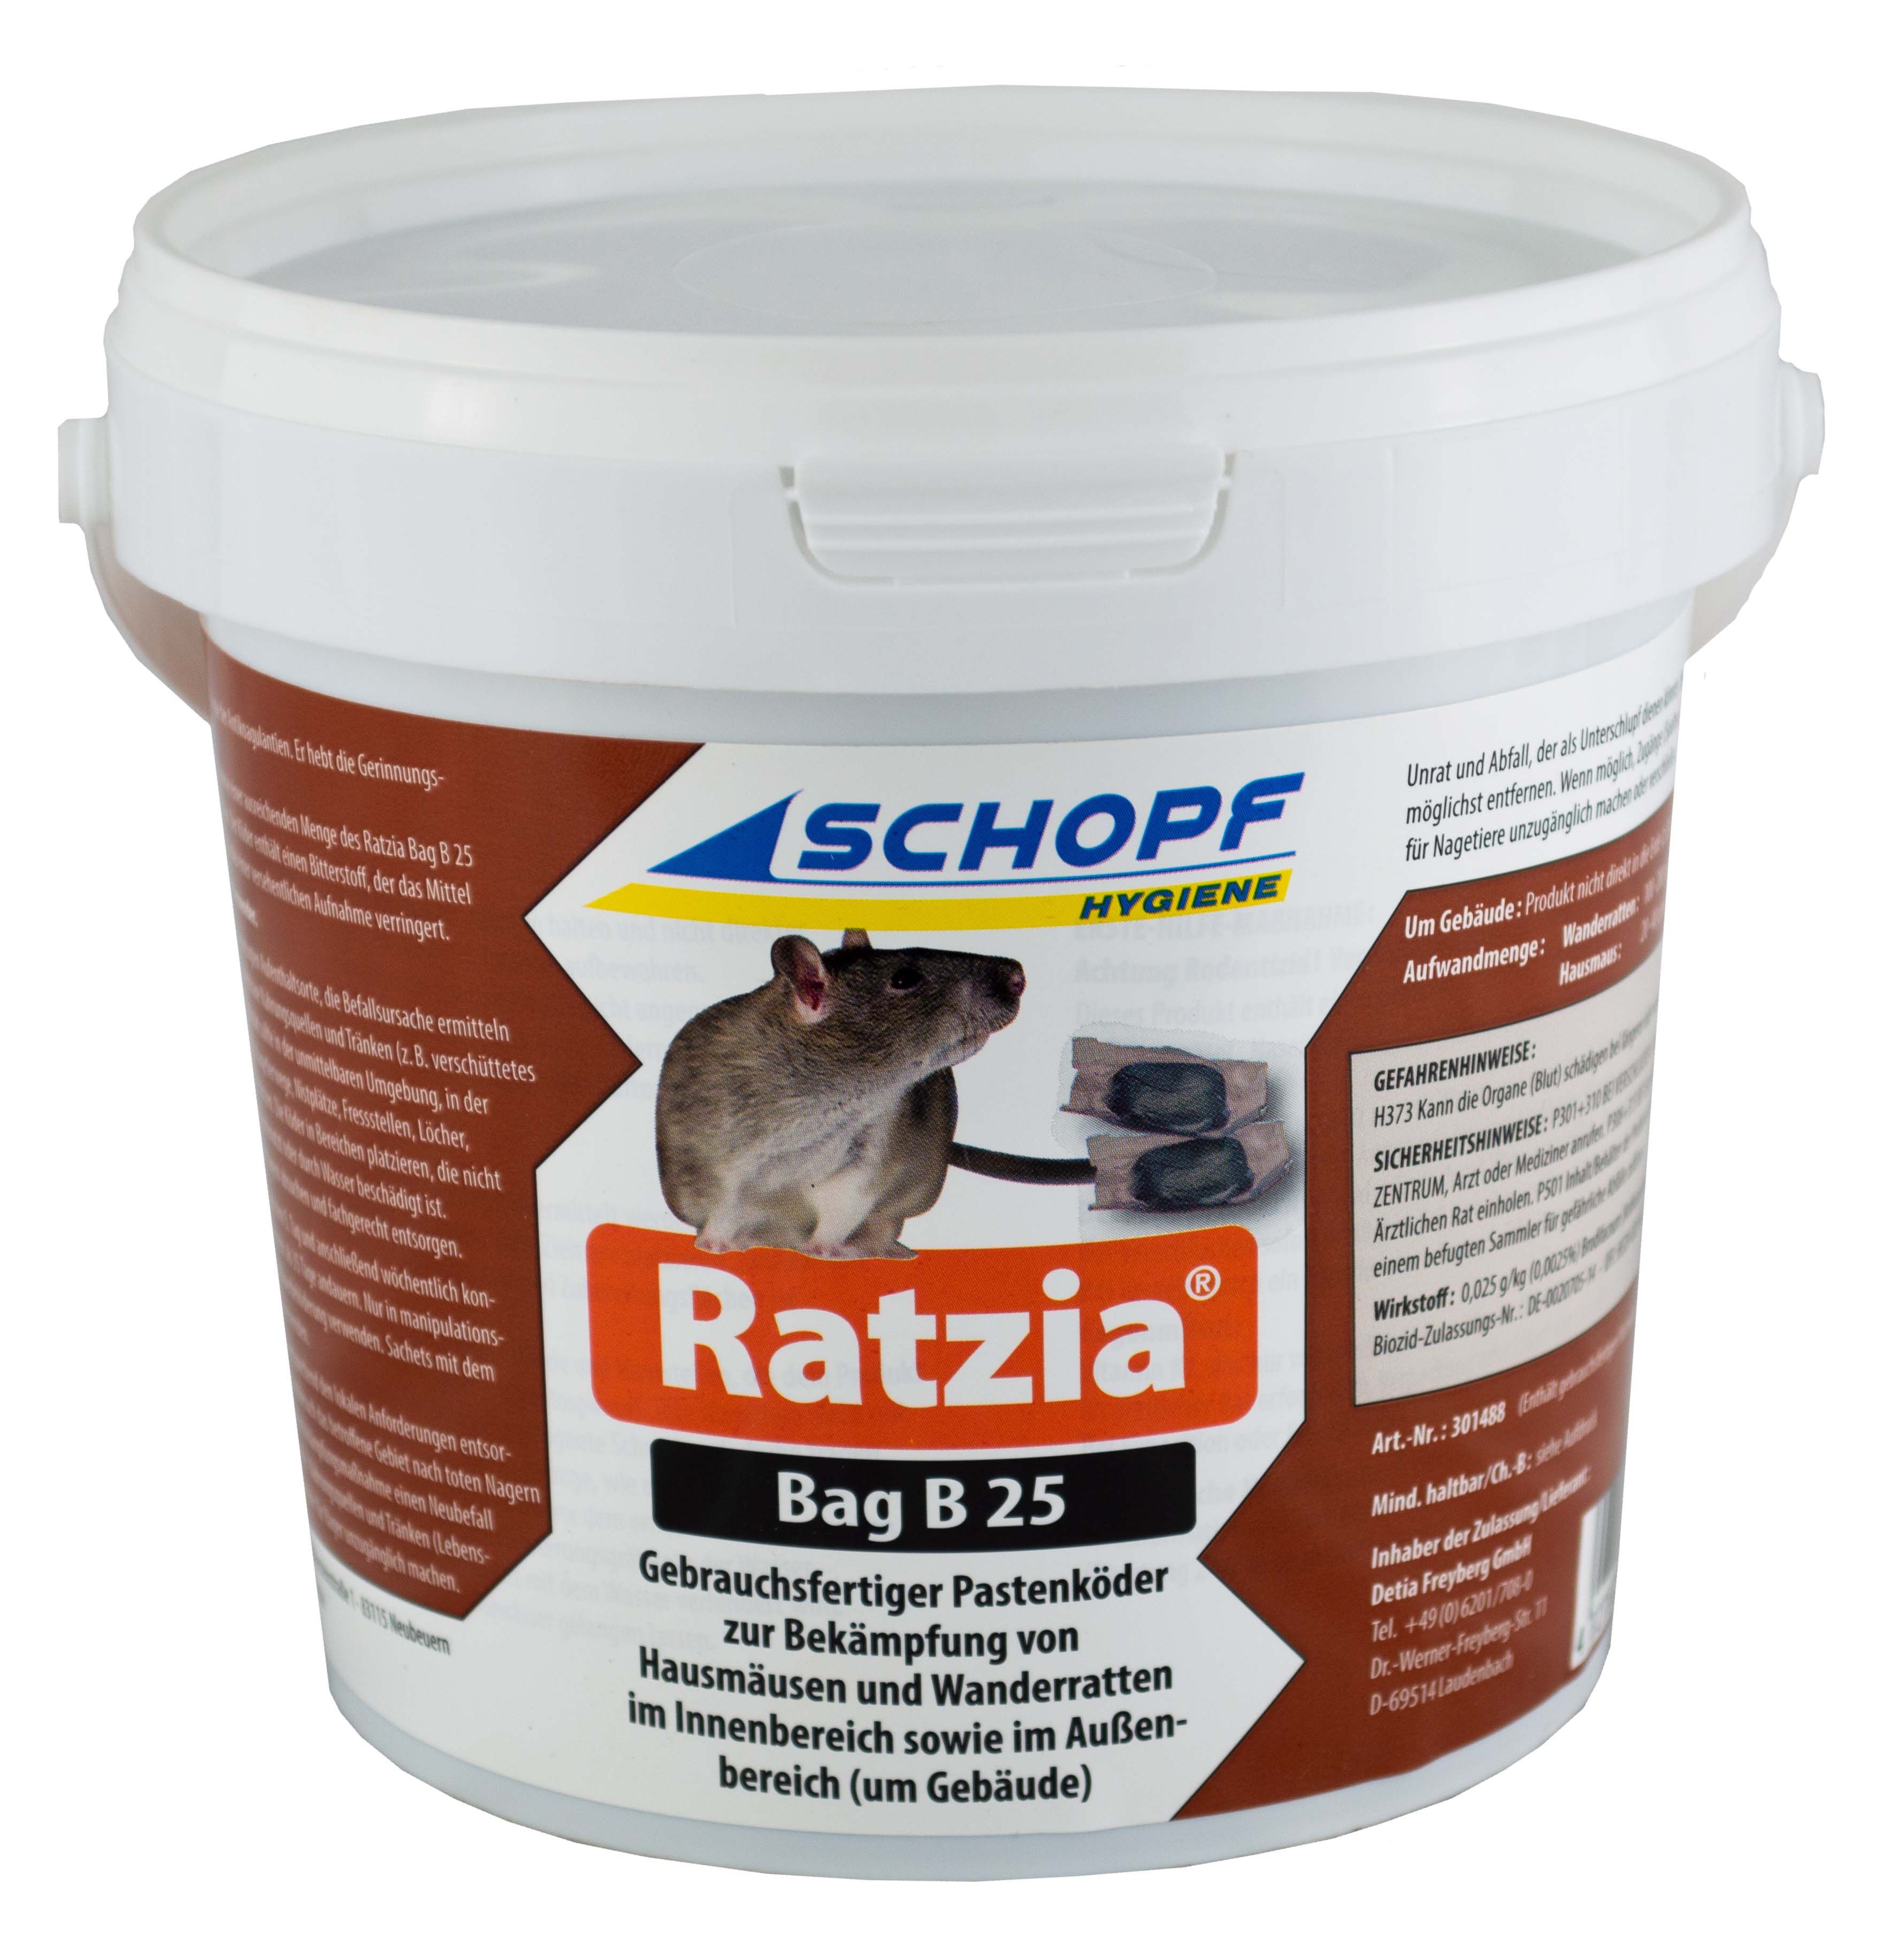 Ratzia Bag B 25 Gebrauchsfertiger Pastenköder Schopf 3 kg 